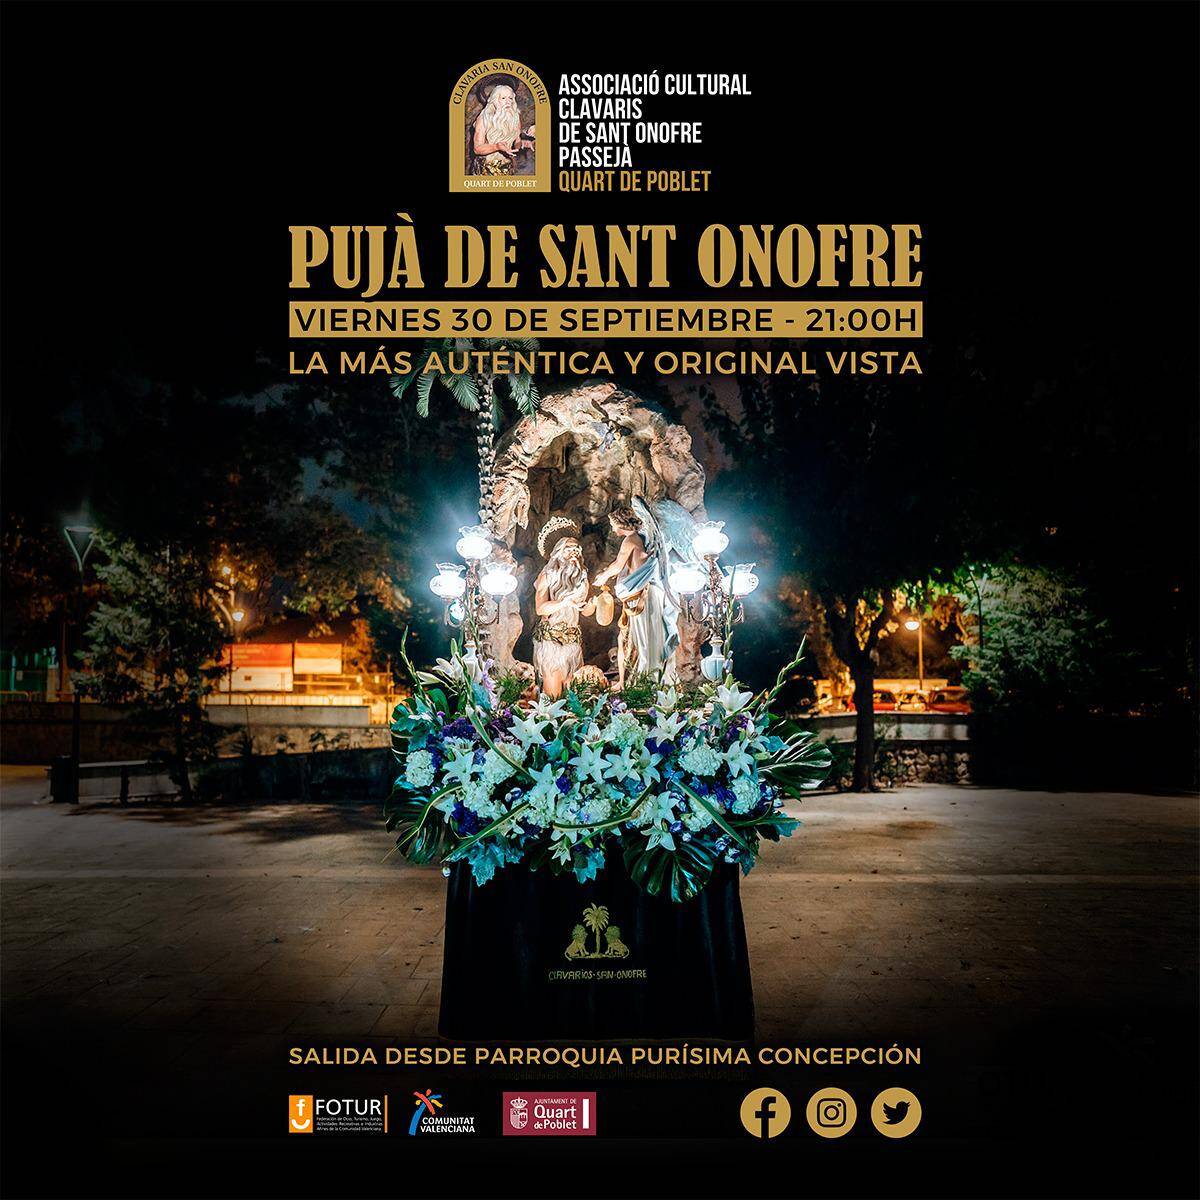 Imagen promocional de la 'Pujà de Sant Onofre' - CLAVARIOS DE SANT ONOFRE